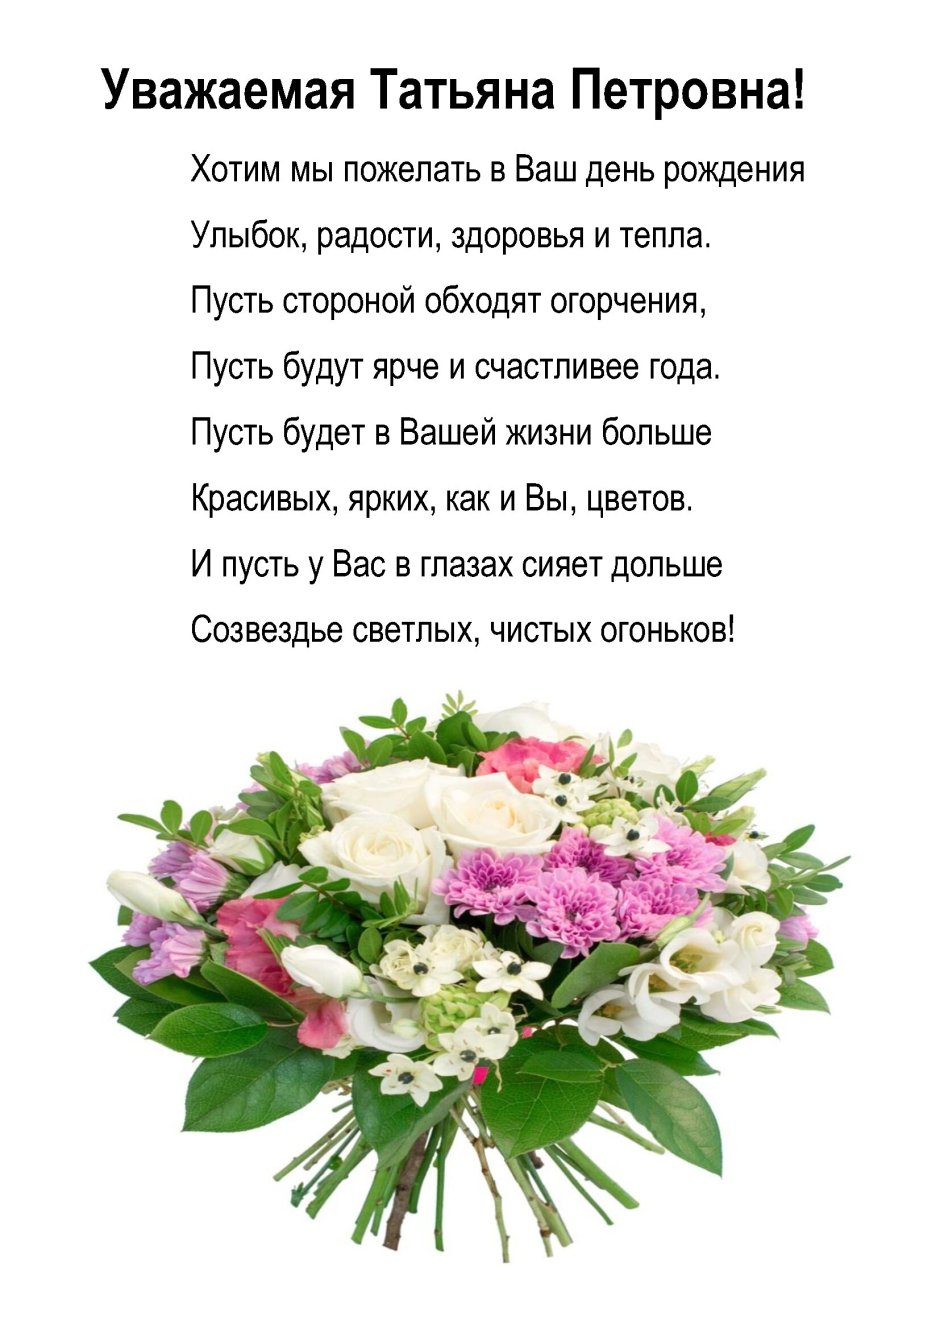 Поздравление для Татьяны Петровны